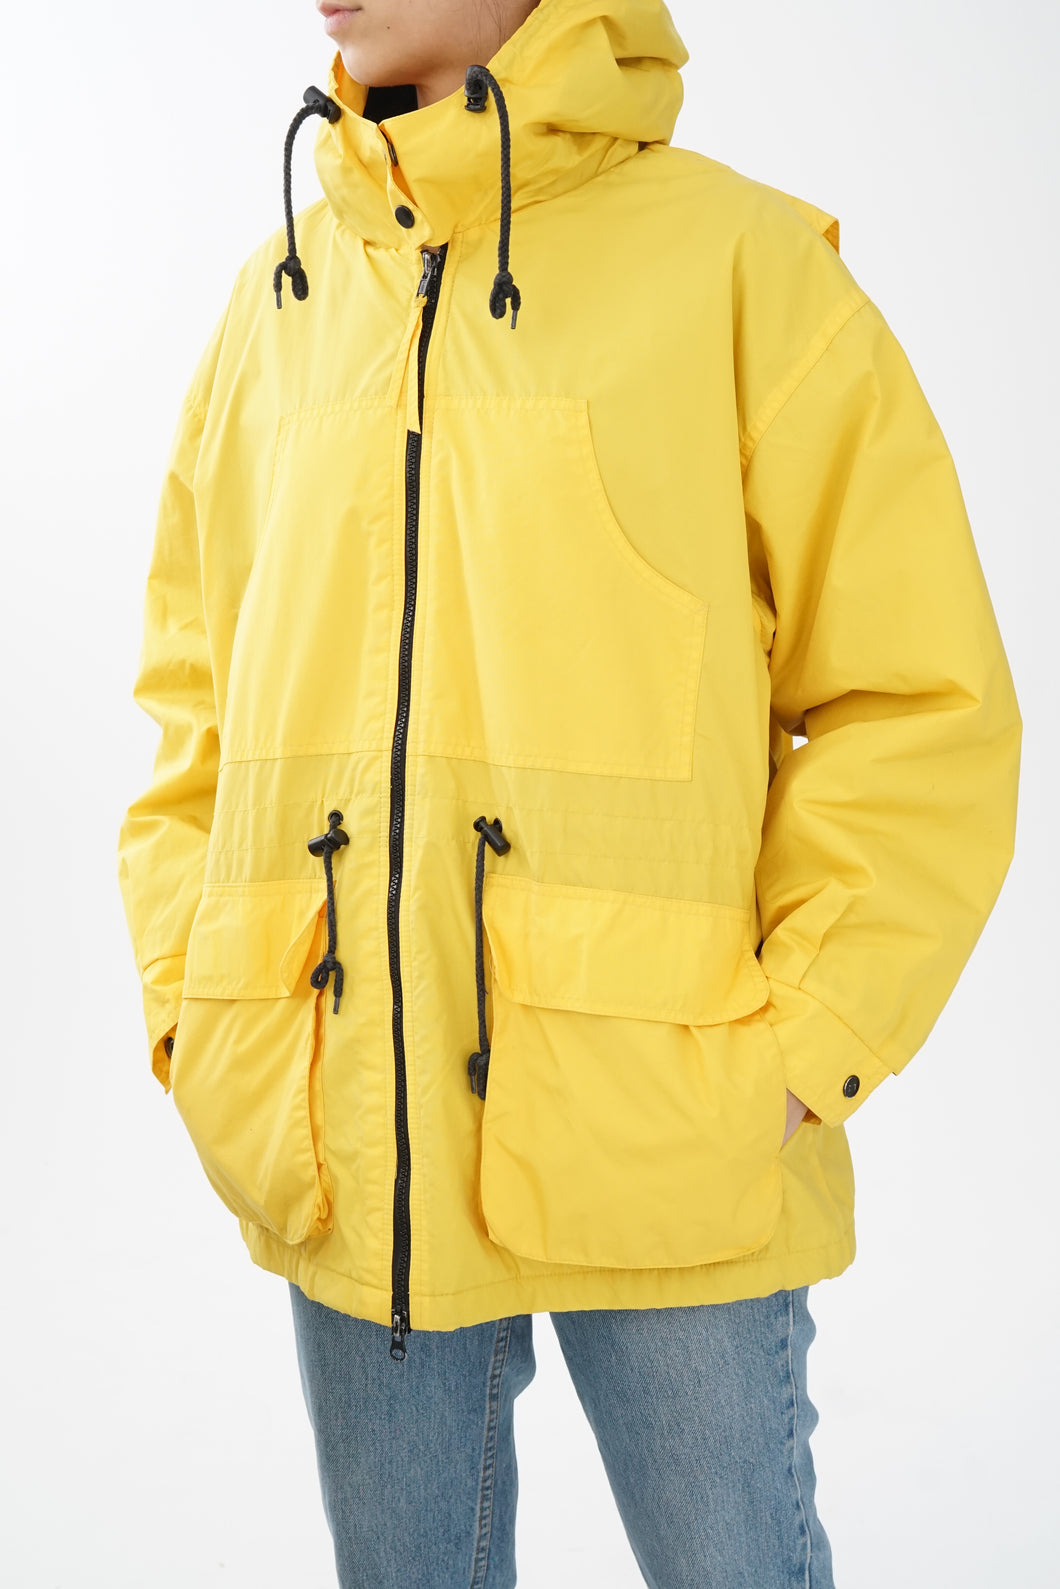 Manteau imperméable avec intérieur en polar jaune taille M